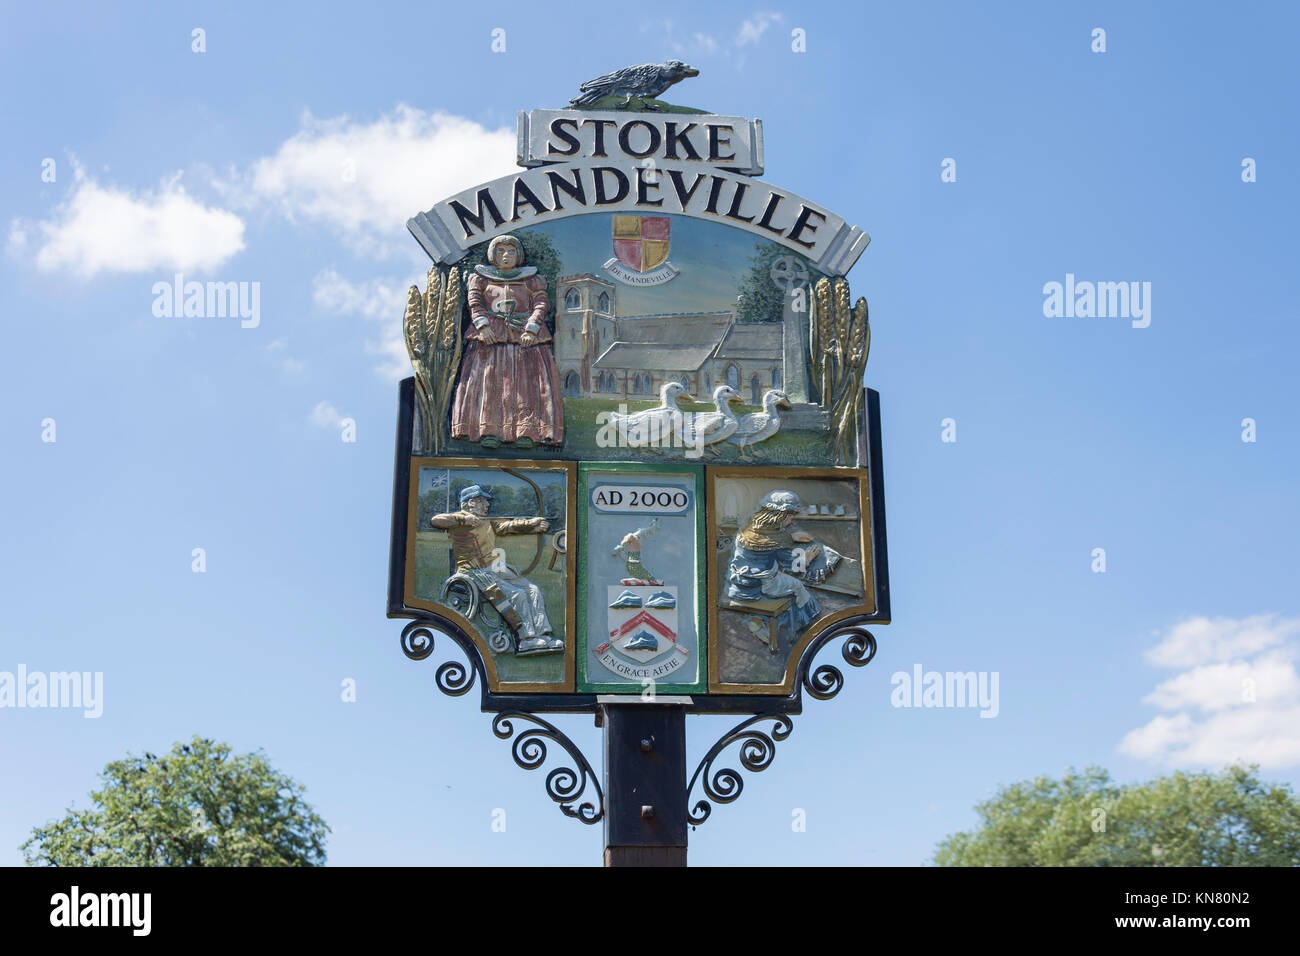 Village sign, Stoke Mandeville, Buckinghamshire, England, United Kingdom Stock Photo